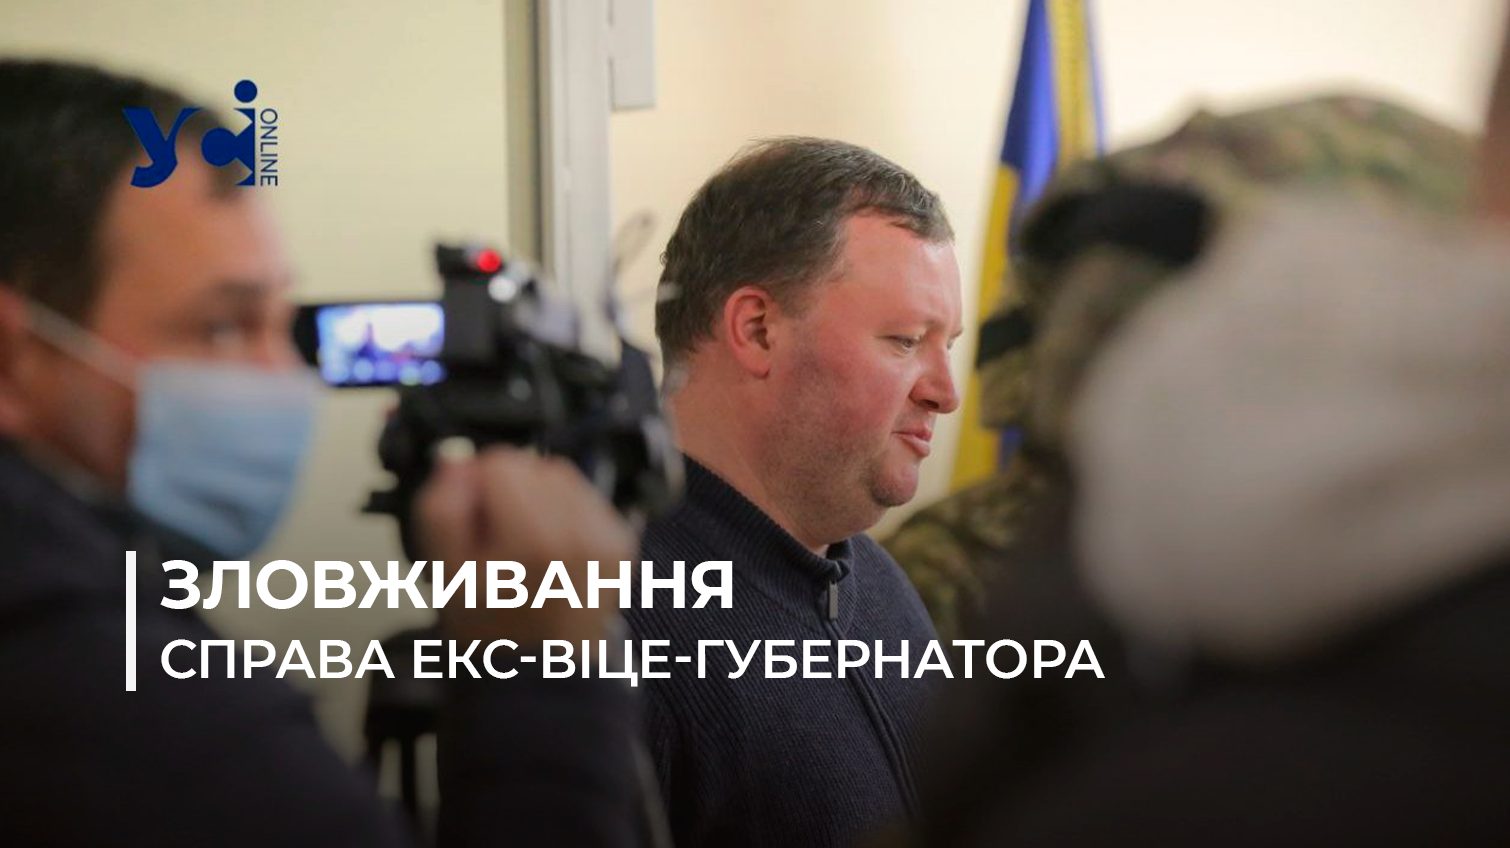 Зловживання на 9,2 млн грн: в Одеській ОВА збагачувалися на закупівлі продуктів, слідство завершено «фото»